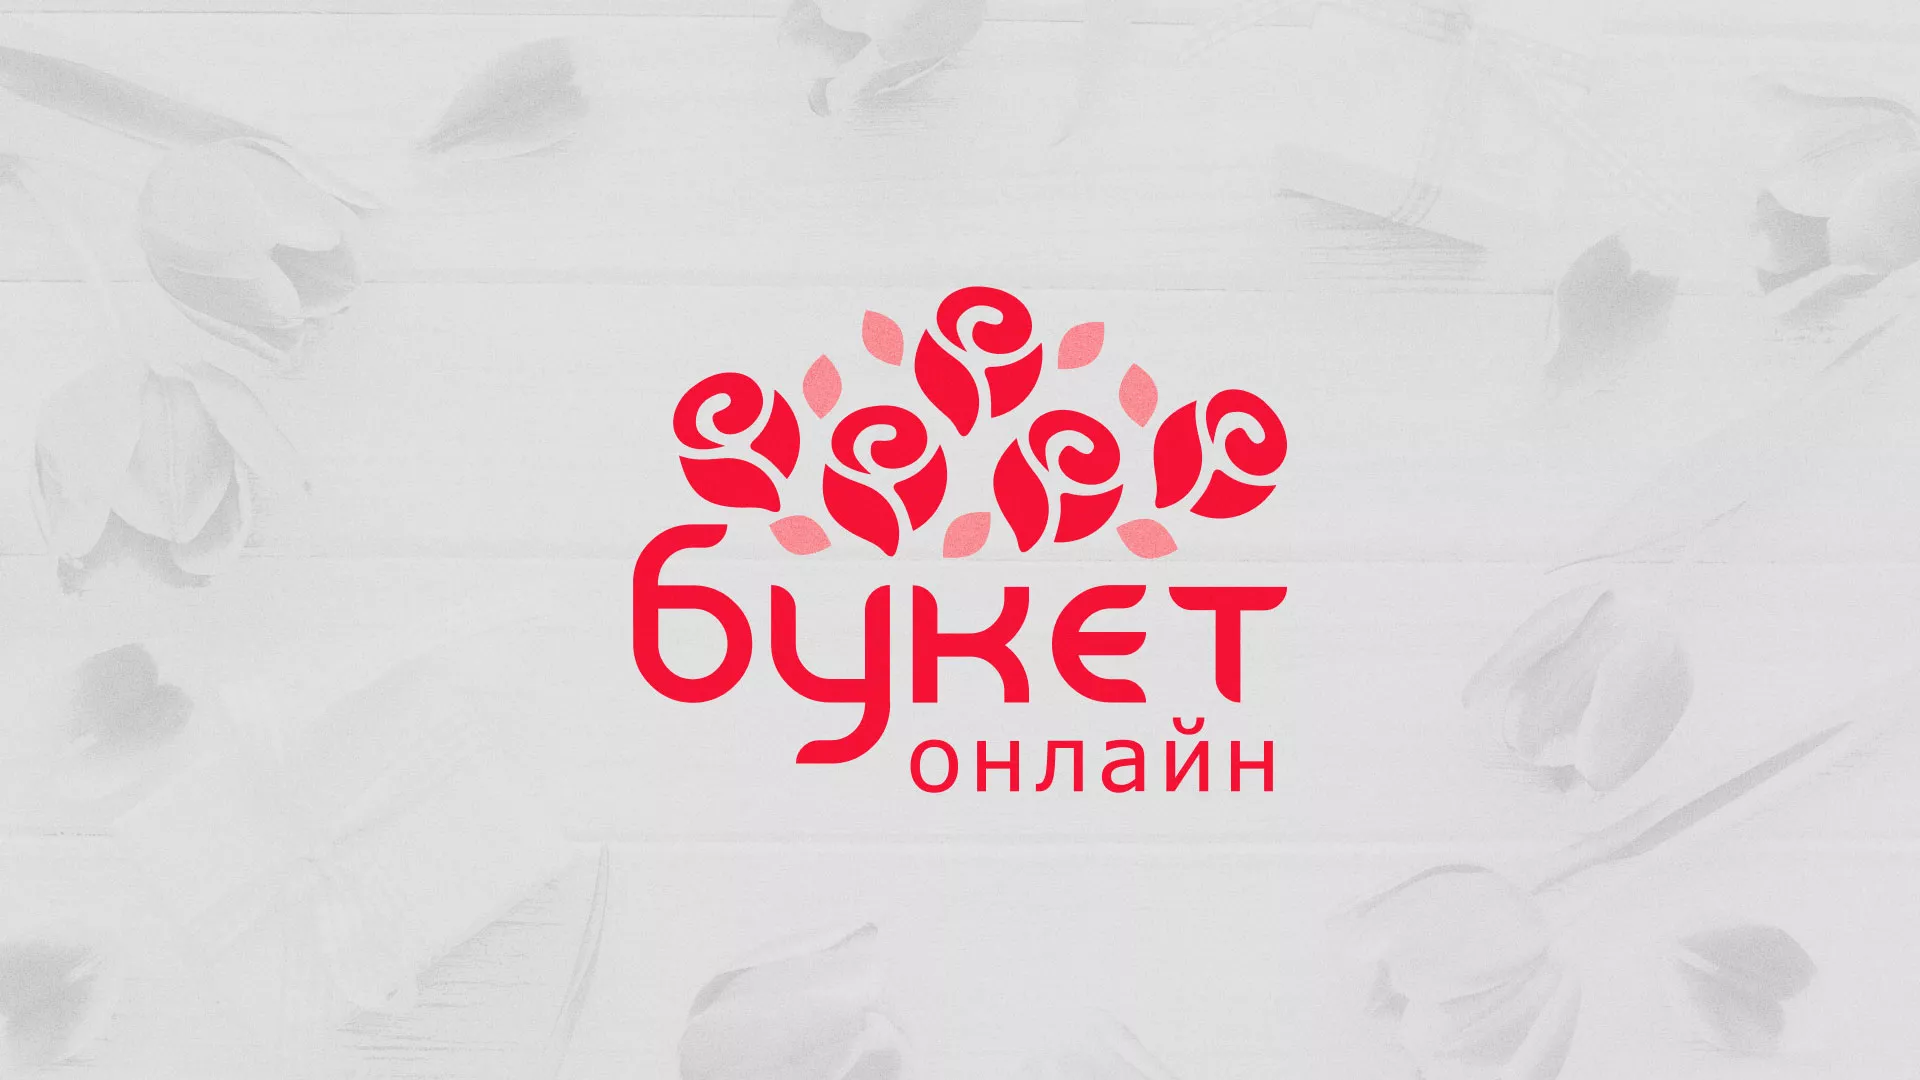 Создание интернет-магазина «Букет-онлайн» по цветам в Приозерске